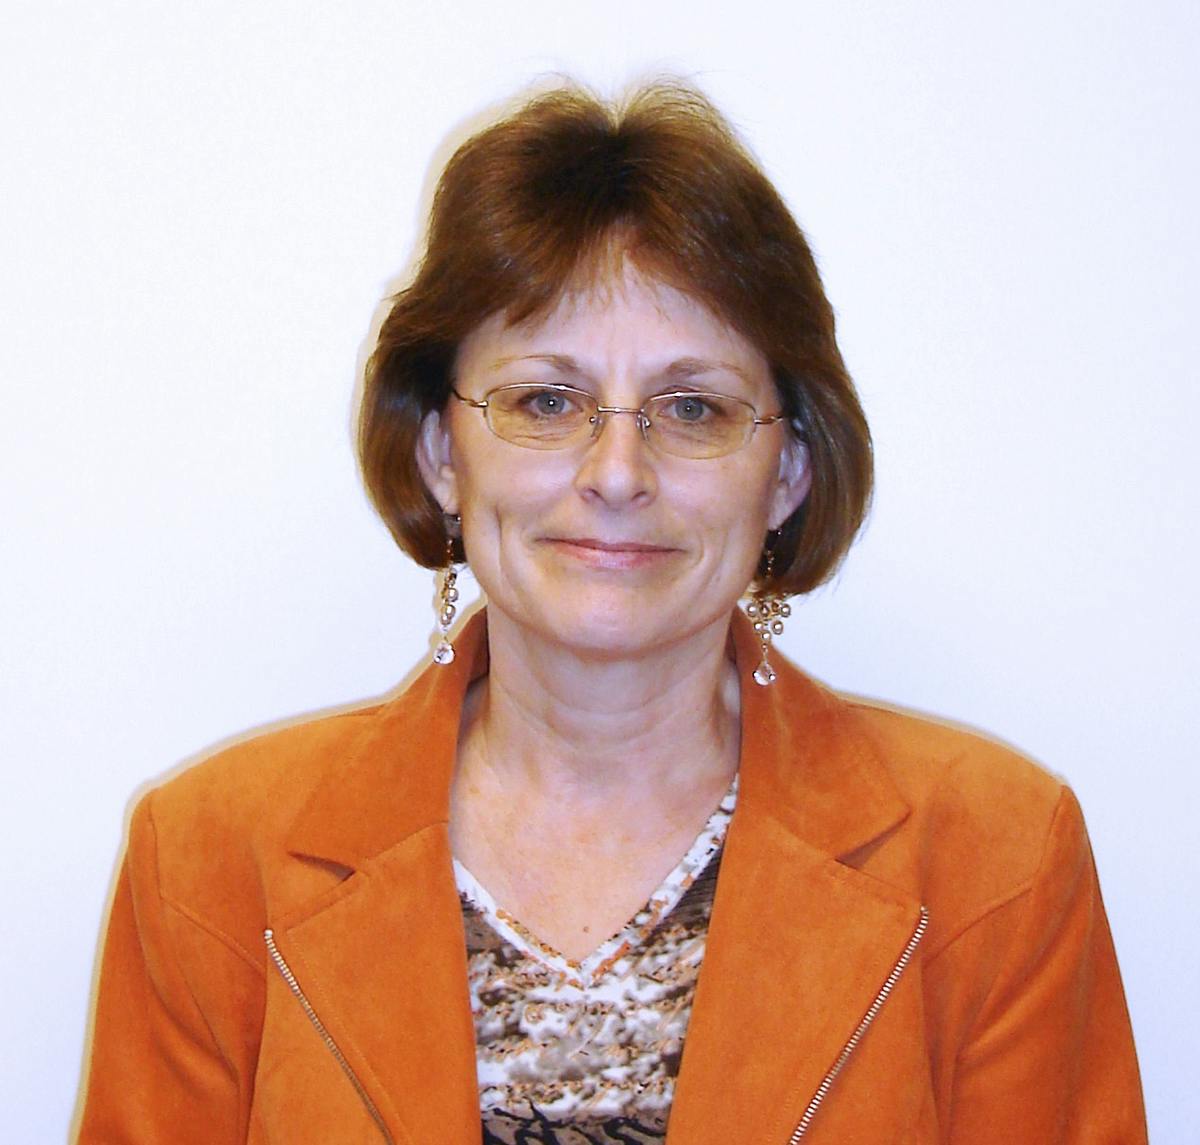 Team member, Kathleen Dale